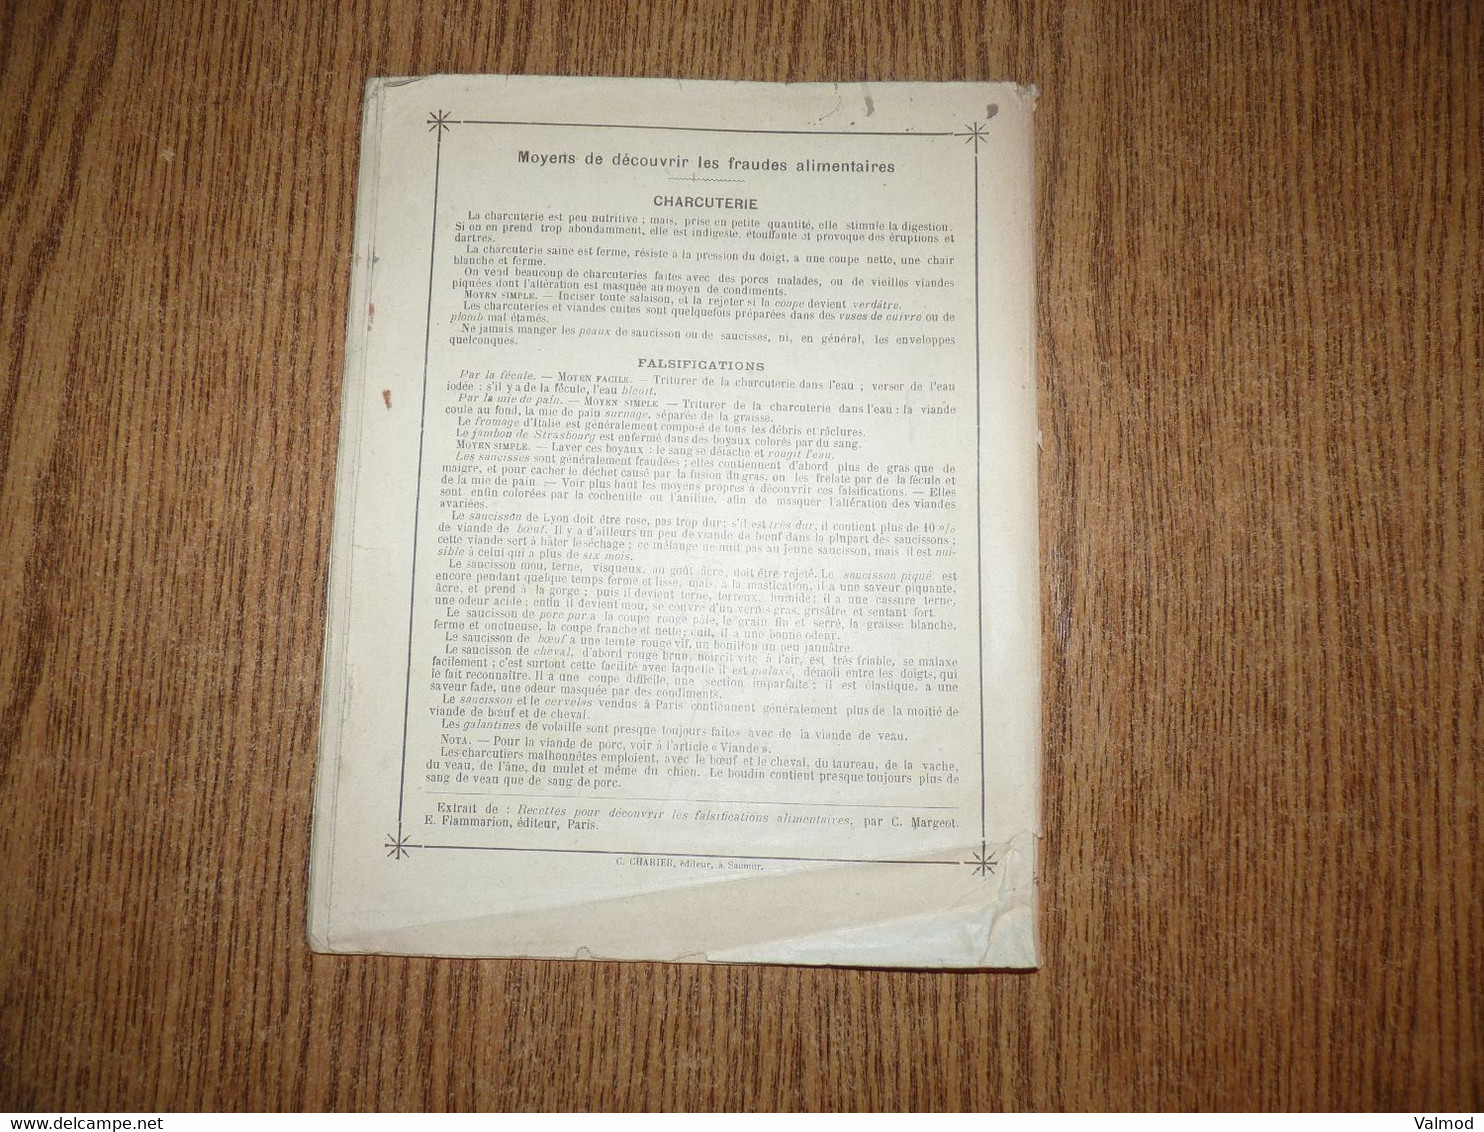 Cahier de Devoirs de Vacances début 1900-Fraudes Alimentaires-La Charcuterie-Le Familistère-Format plié 22,3x17,7cm env.